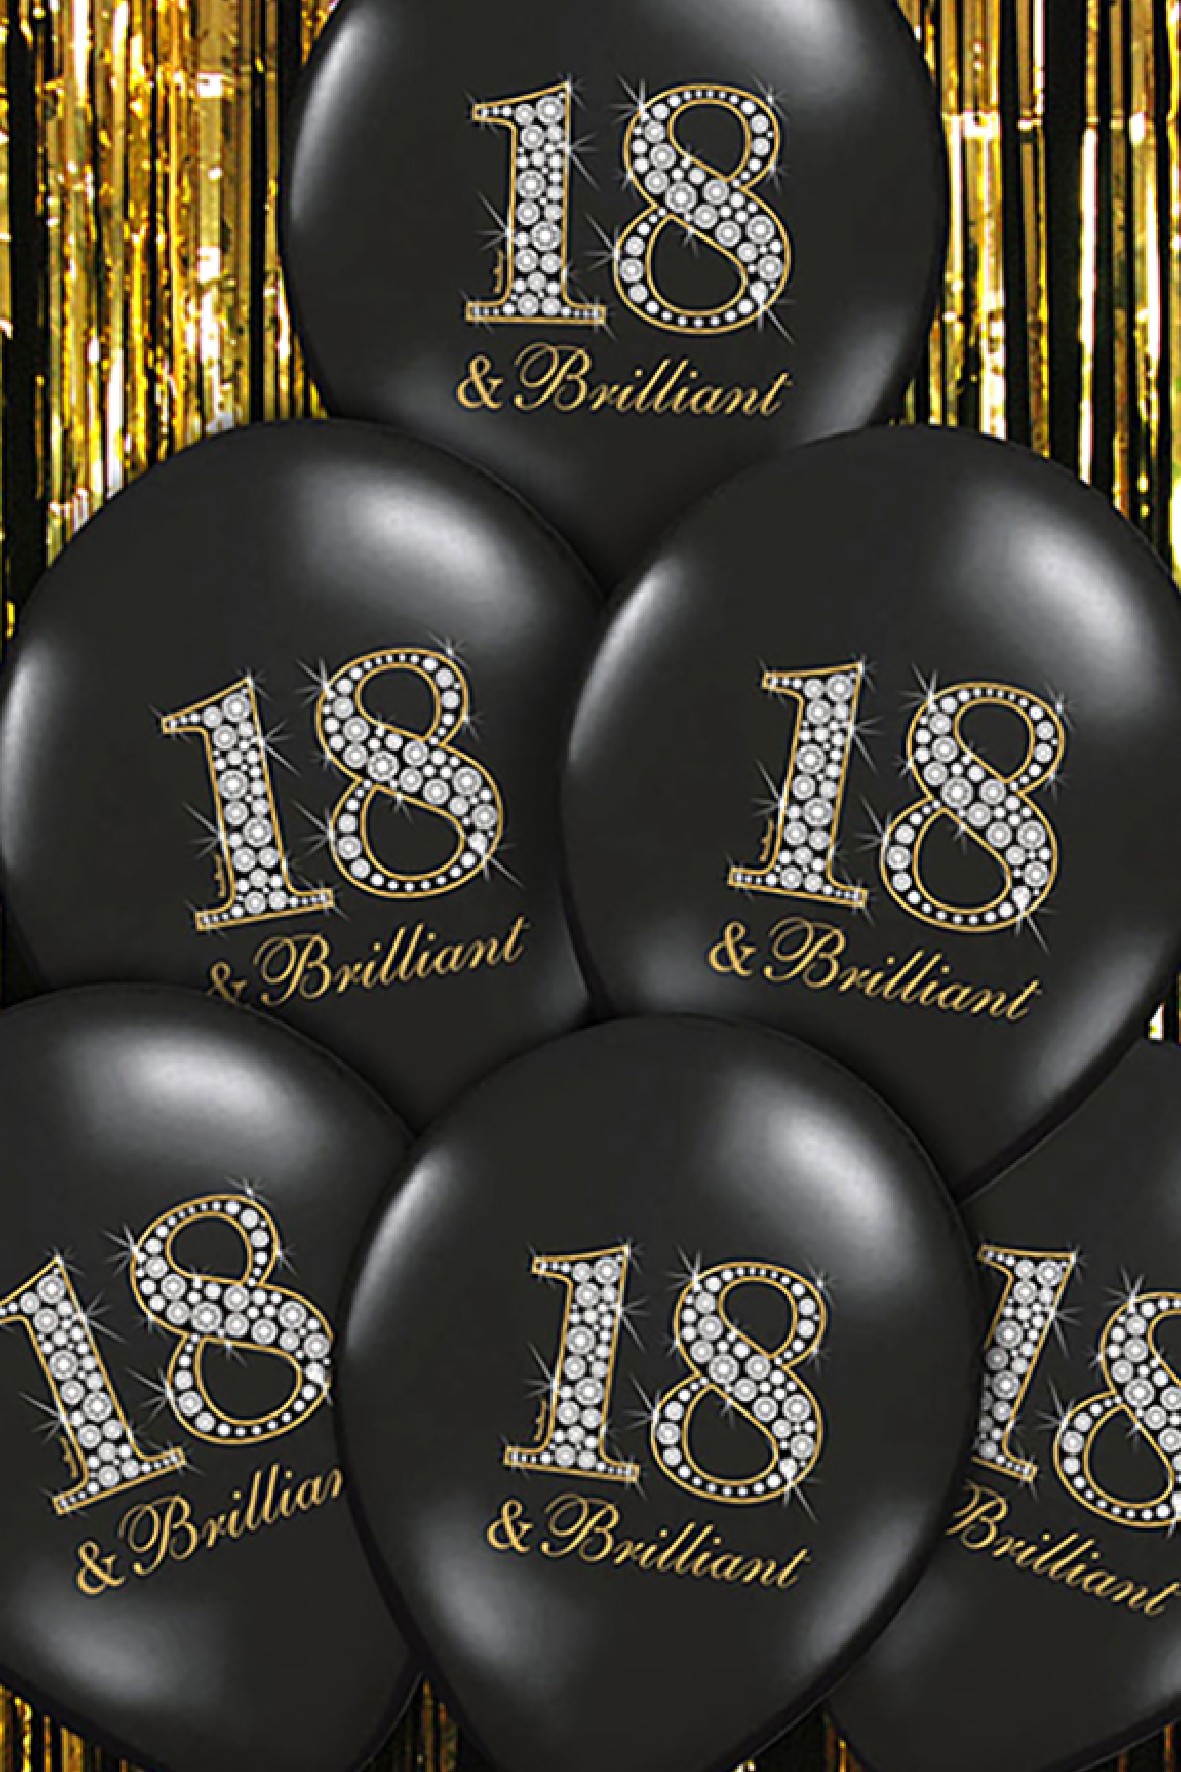 Balony "18" & Brilliant -  Pastel Black 6szt